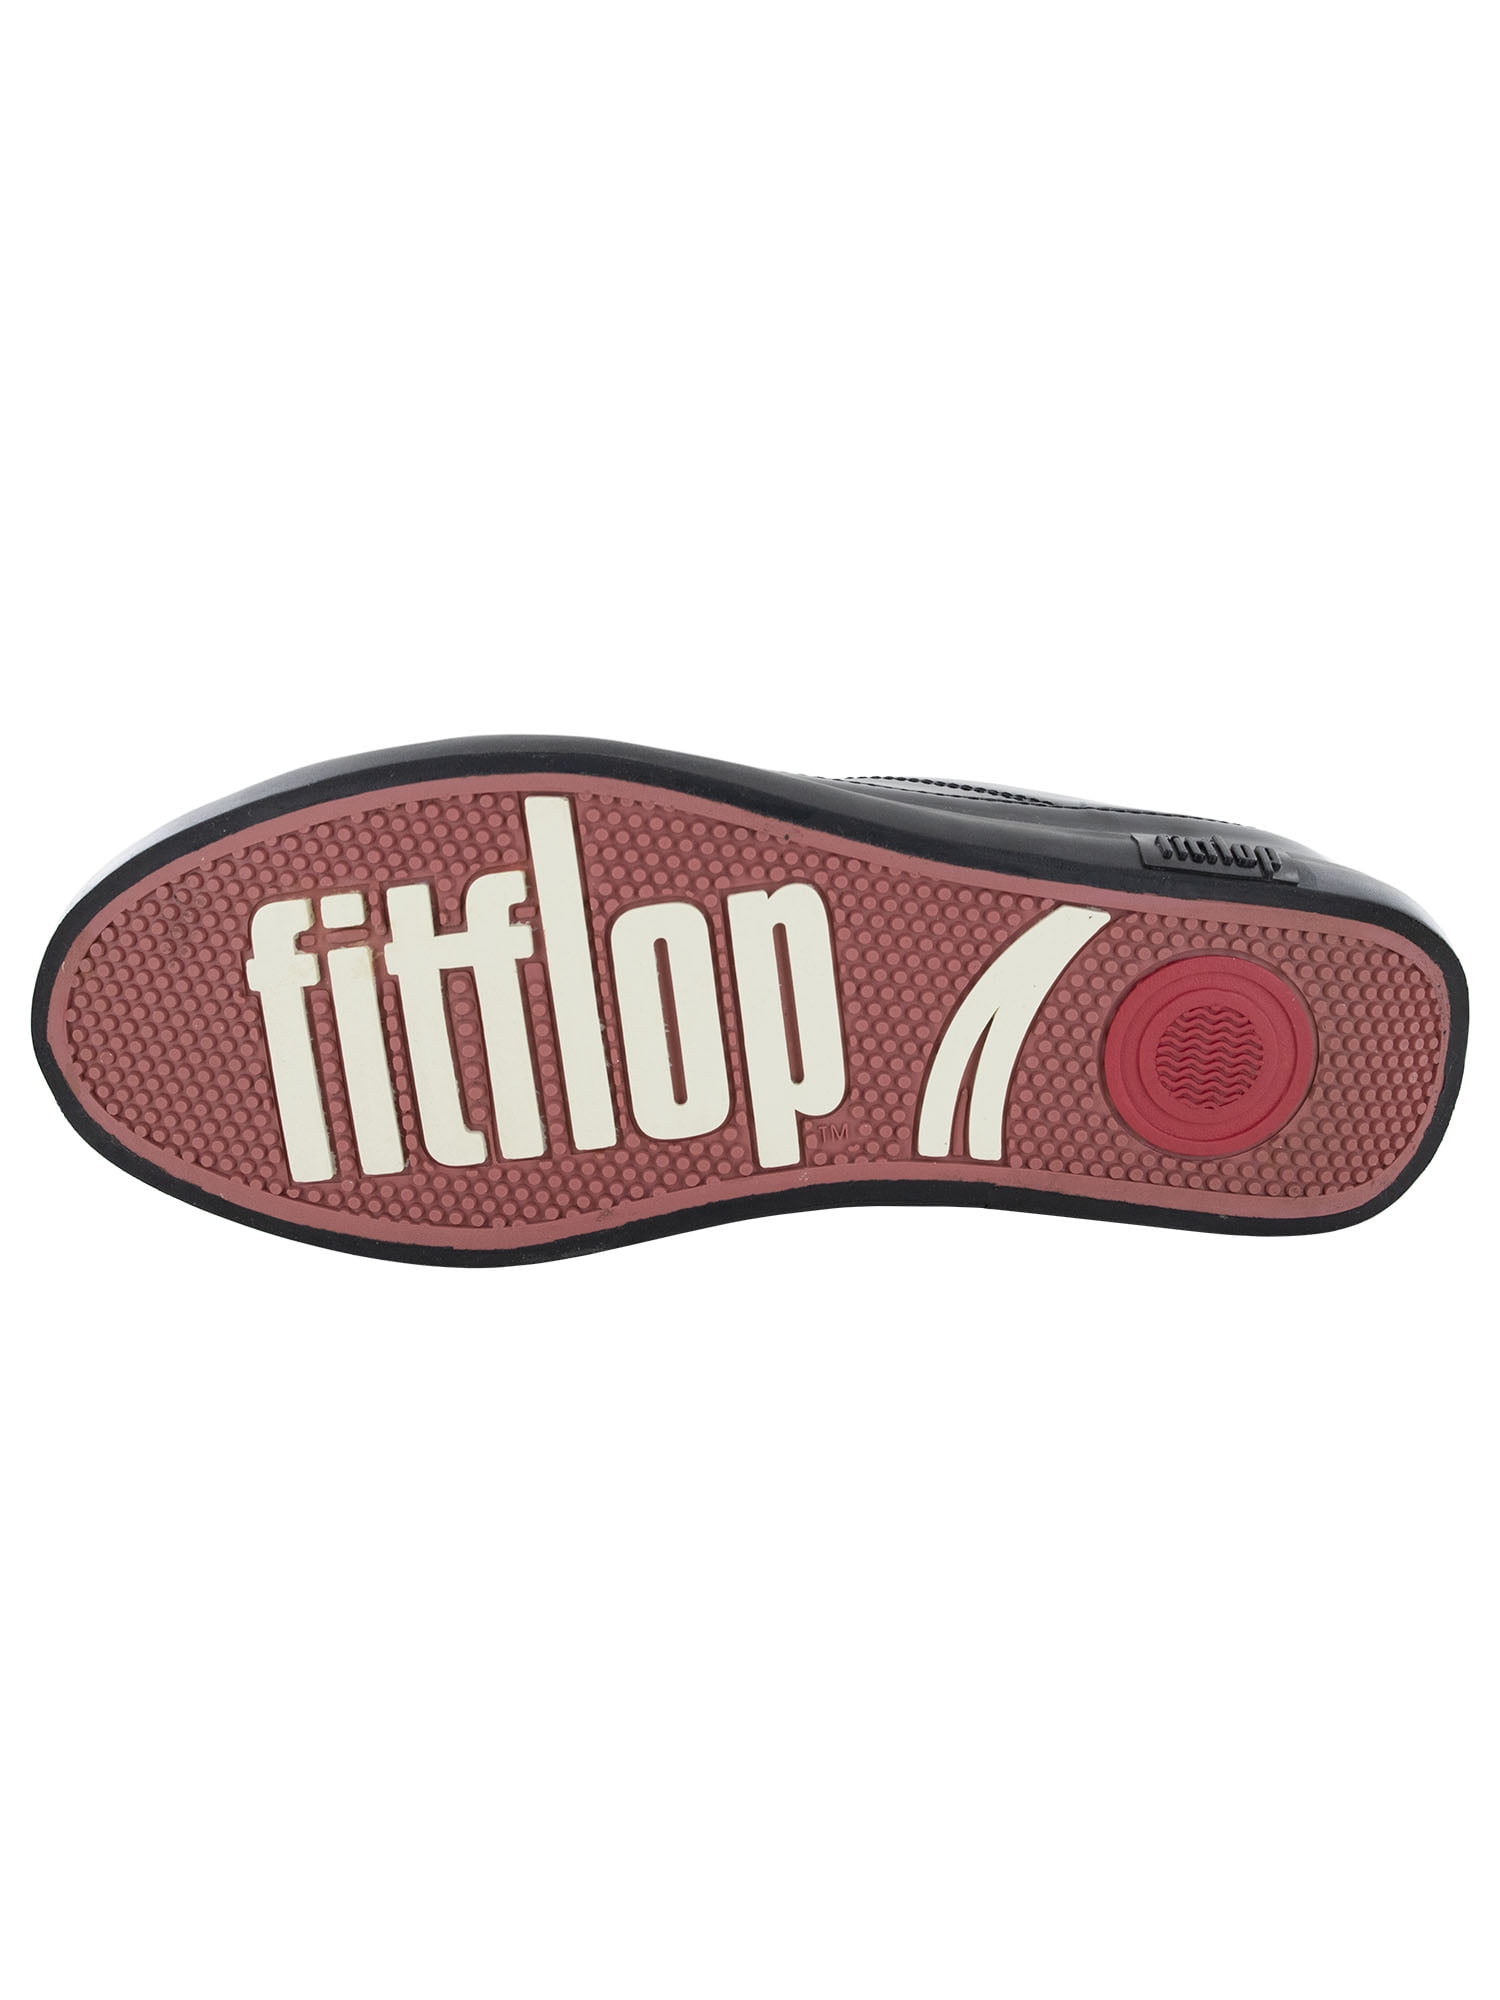 FitFlop Sneaker ❤️ Schuhe Mit Patentierter Zwischensohle